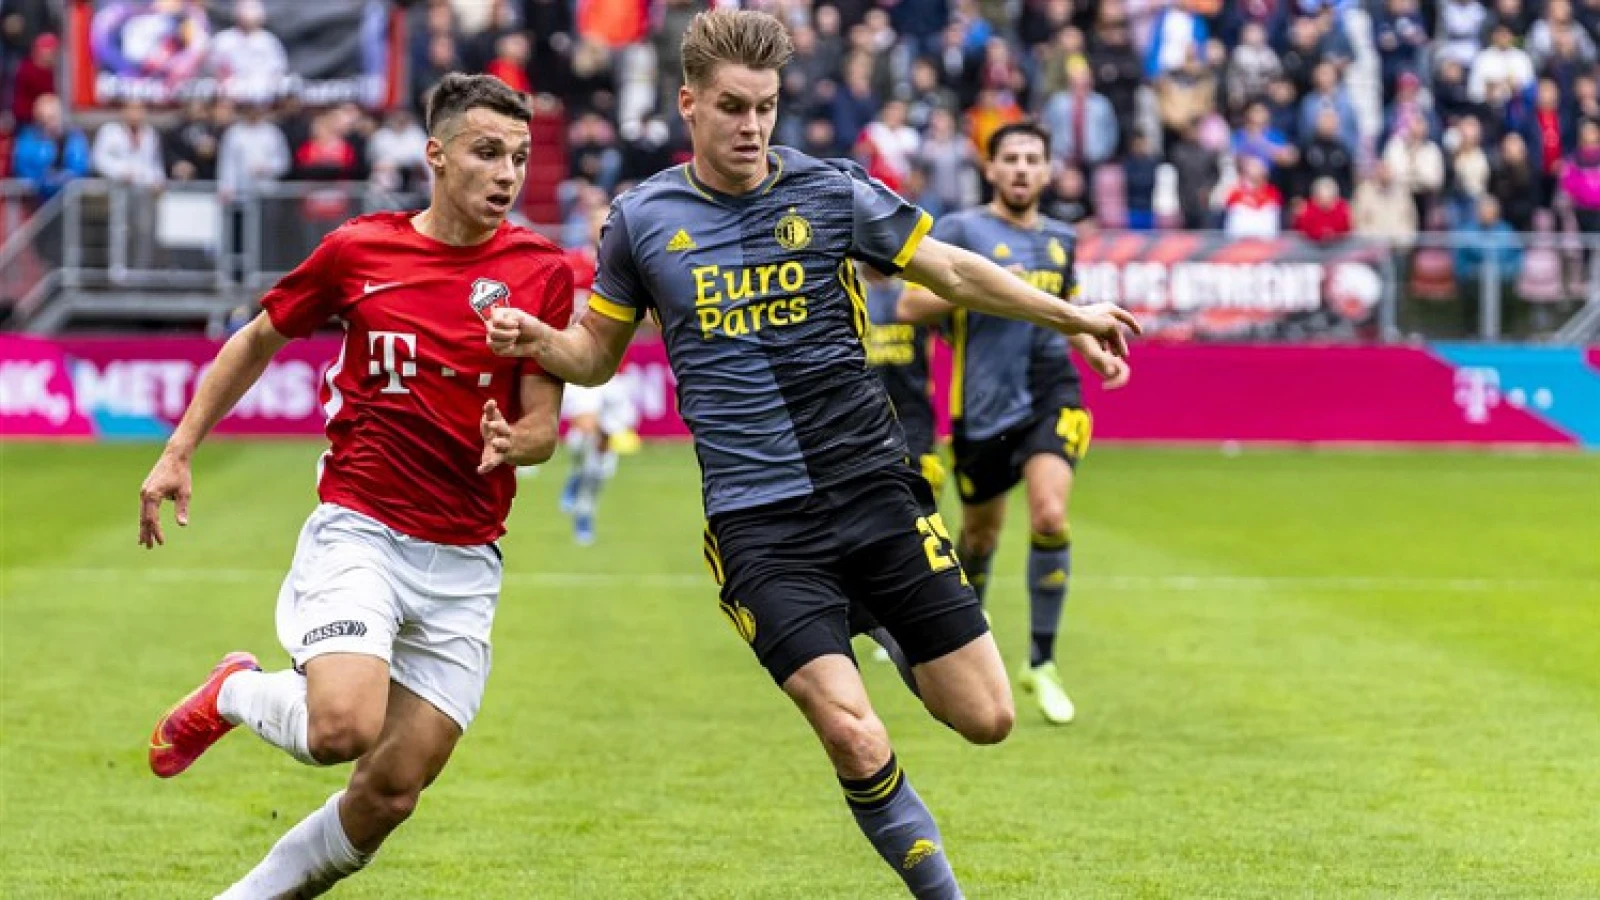 OPSTELLING | Feyenoord start met Hendriks in de basis